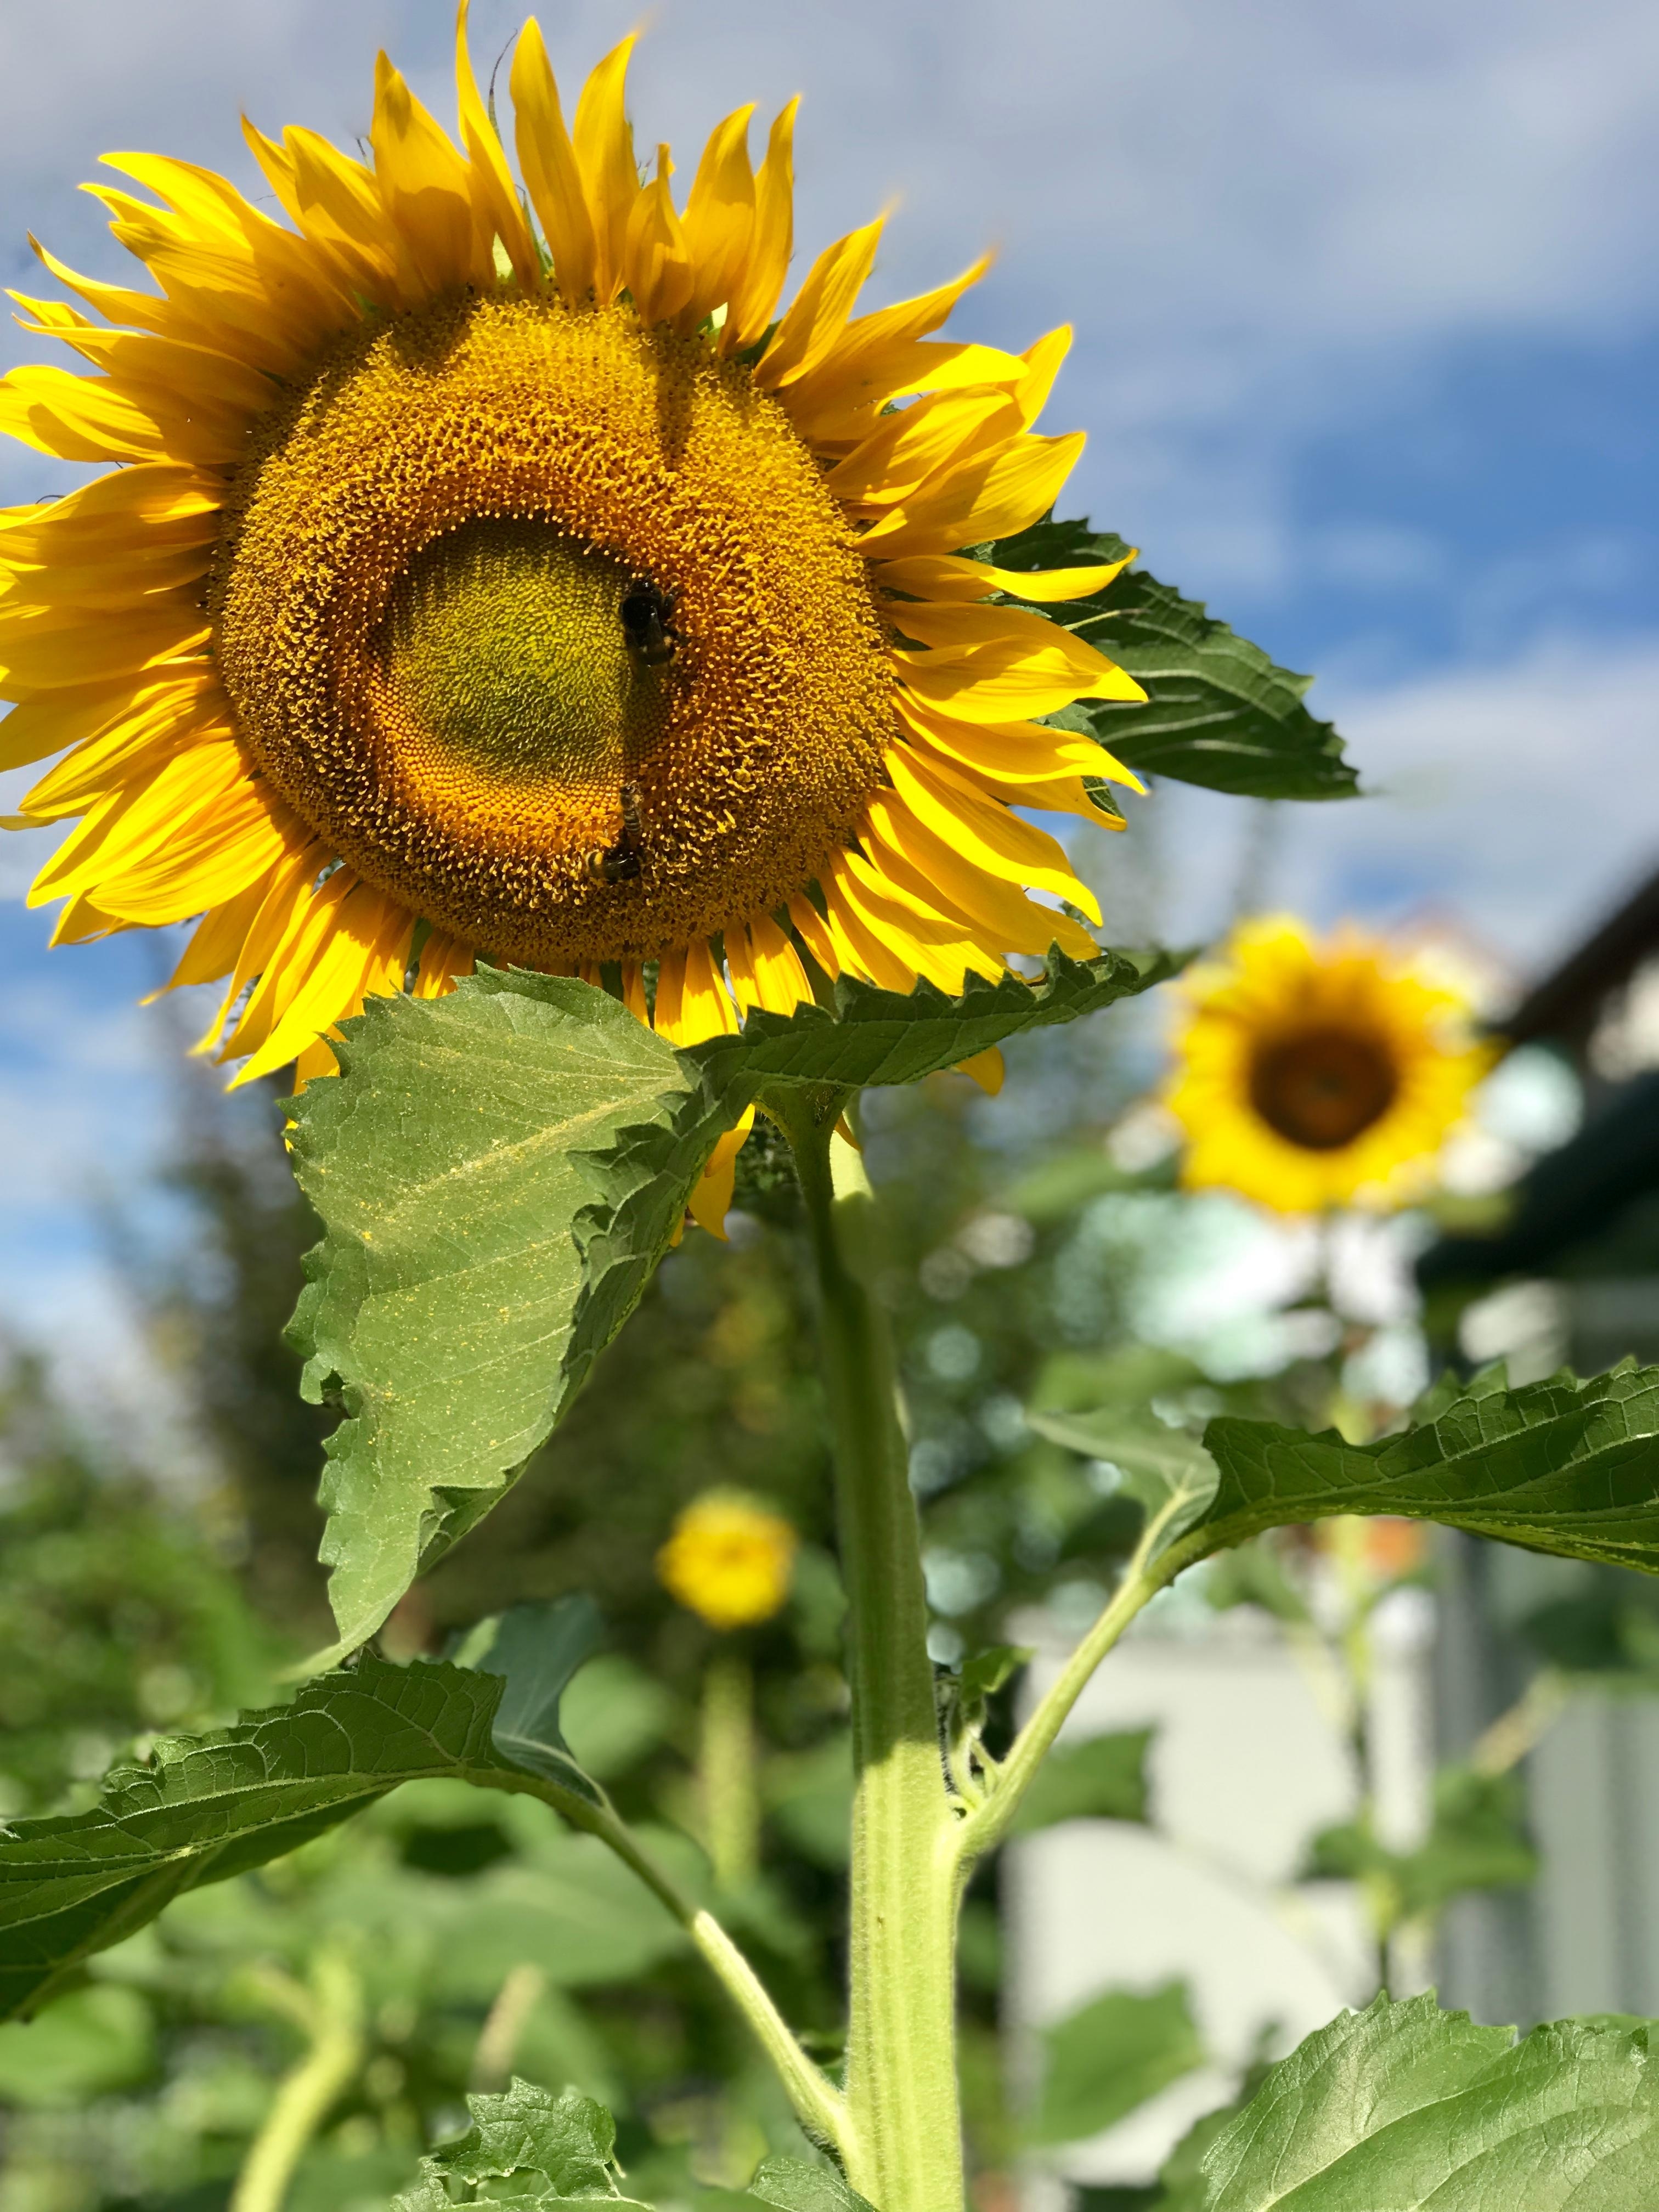 Sonnenblumen in unserem Garten #gartenliebe #sonnenblumen #sommer #summerfeeling #sonne #pflanze #bienen #detailverliebt